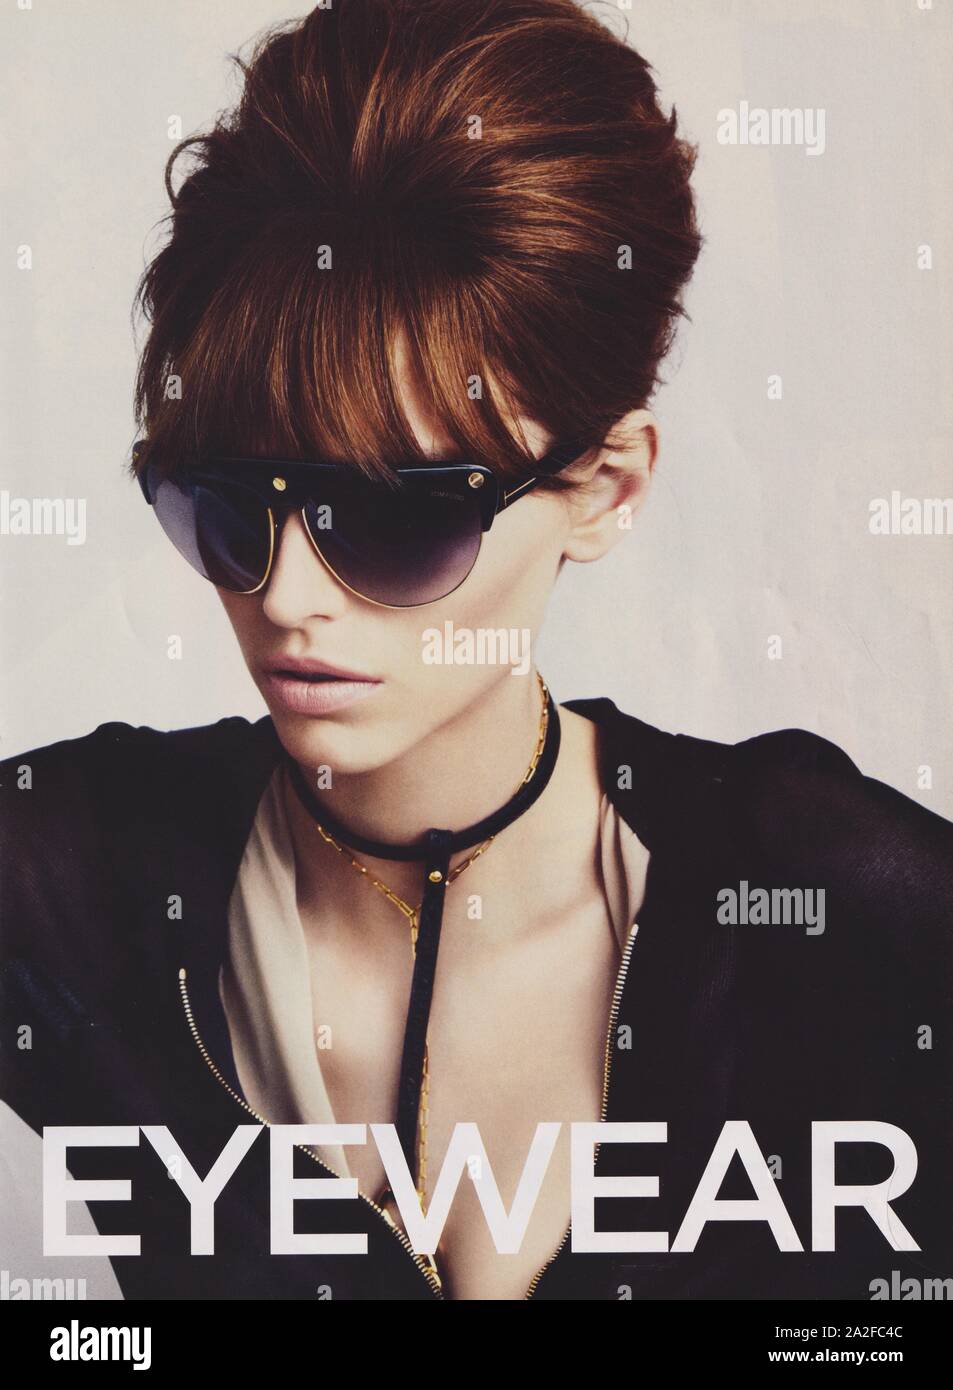 Plakat Werbung Tom Ford Eyewear Modehaus Papiermagazin von 2013 Jahren, Werbung, Werbung 2010er Jahren Stockfotografie - Alamy